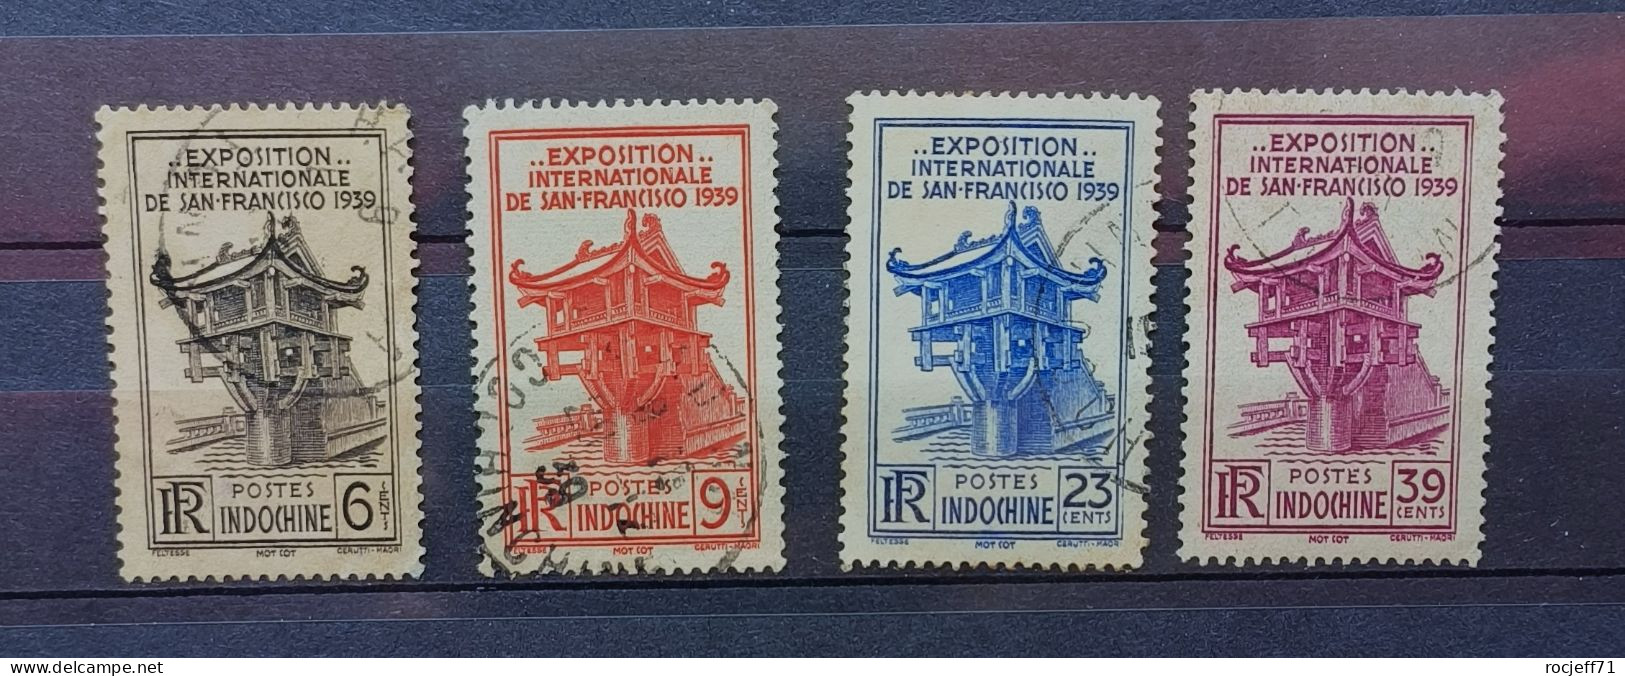 04 - 24 - Indochine - N° 205 à 208 - Expo De San Françisco 1939 - Gebraucht